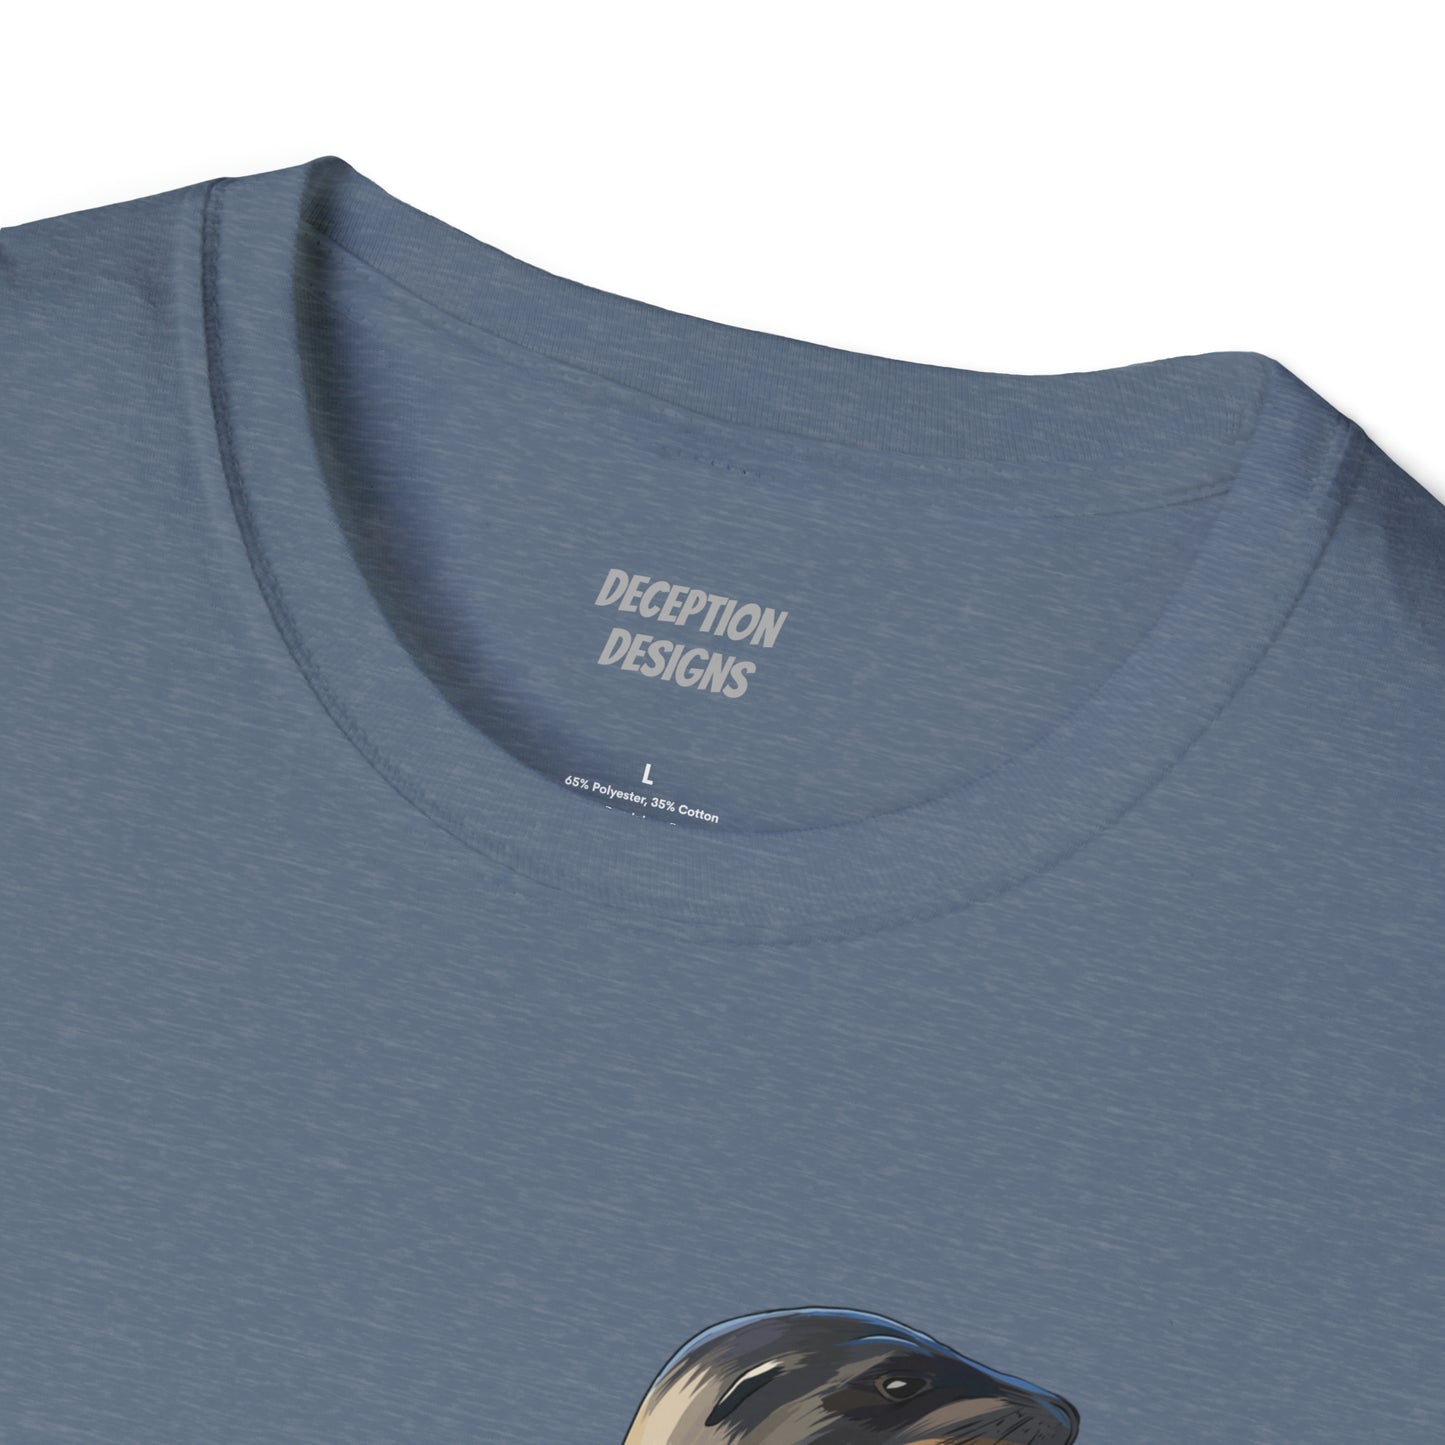 SEA LION ANACORTES Unisex Softstyle T-Shirt